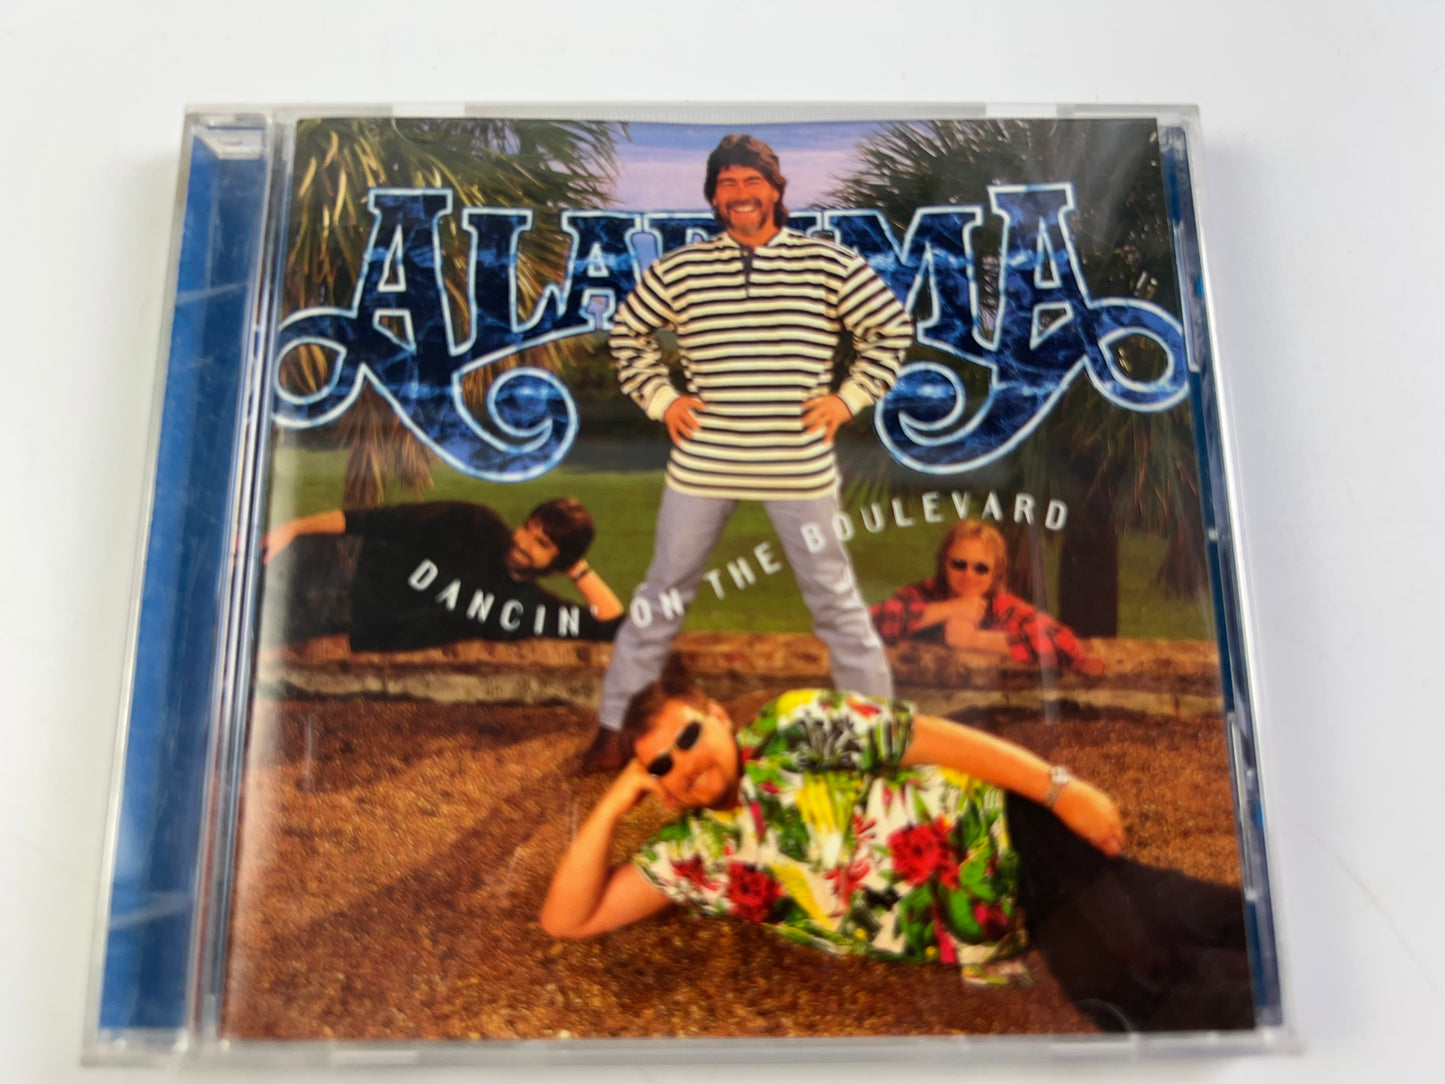 Alabama : Dancin on the Boulevard CD